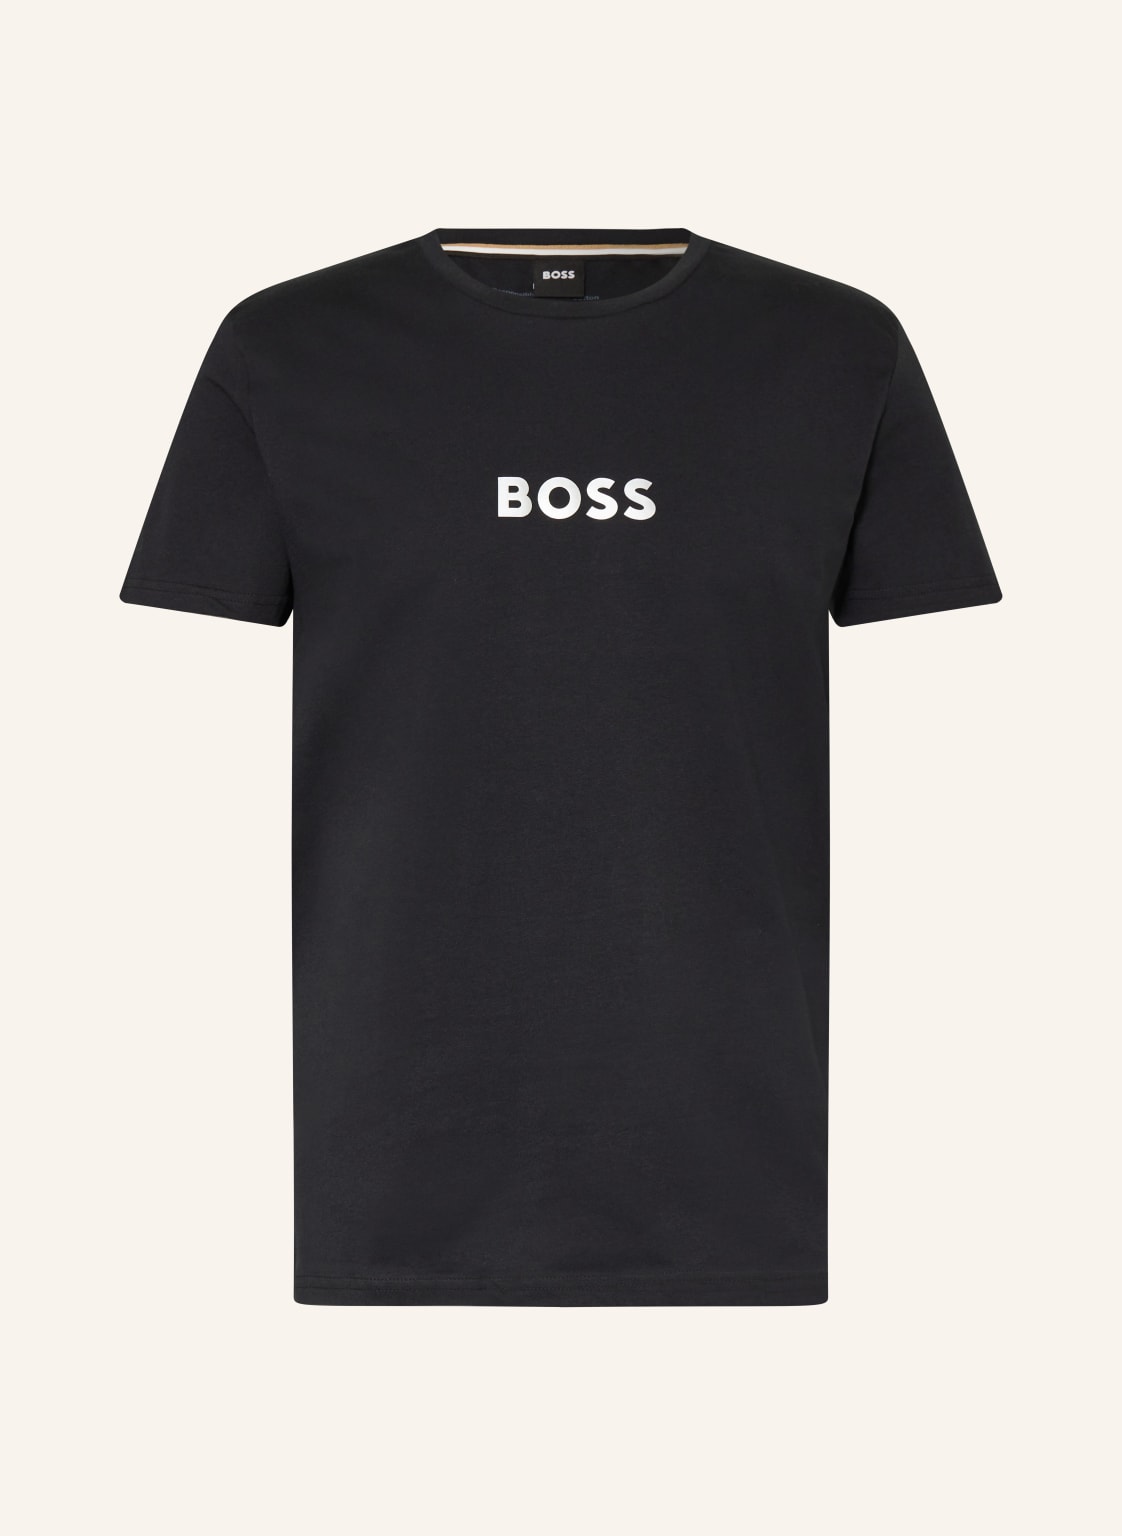 Boss T-Shirt Special schwarz von Boss